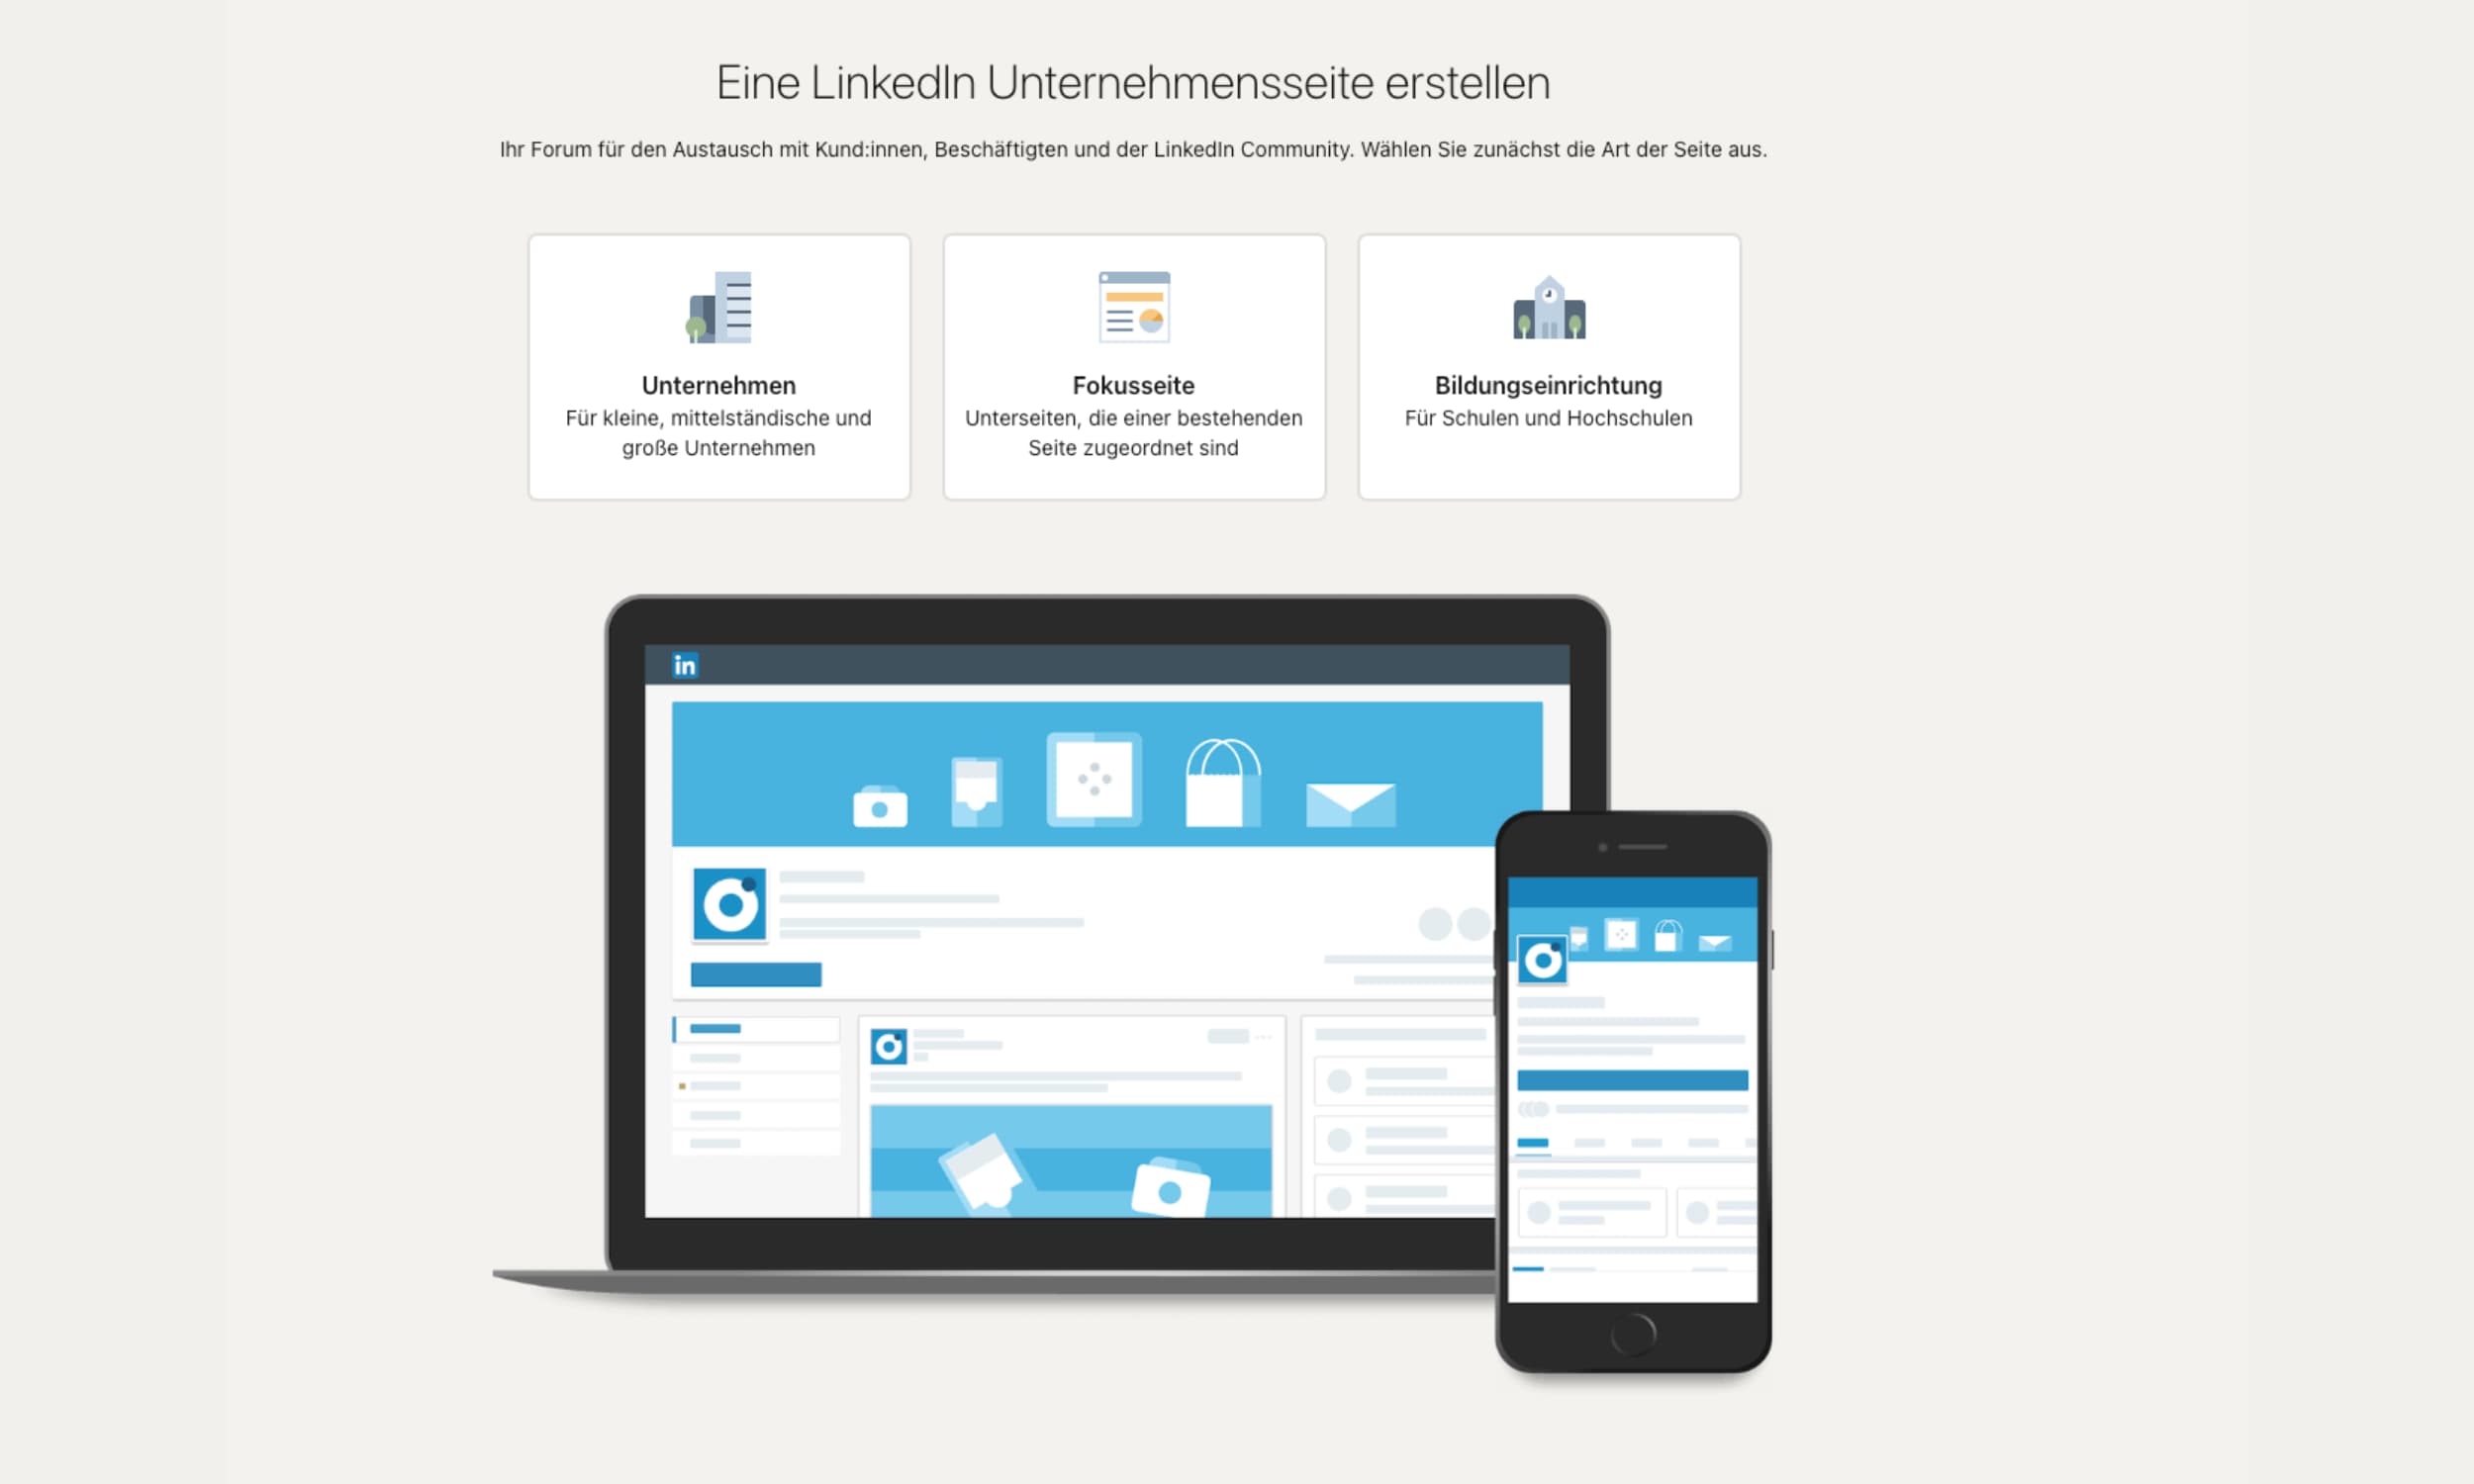 Screenshot mit drei Auswahlmöglichkeiten für die Erstellung einer LinkedIn-Unternehmensseite Unternehmen, Fokusseite und Bildungseinrichtung